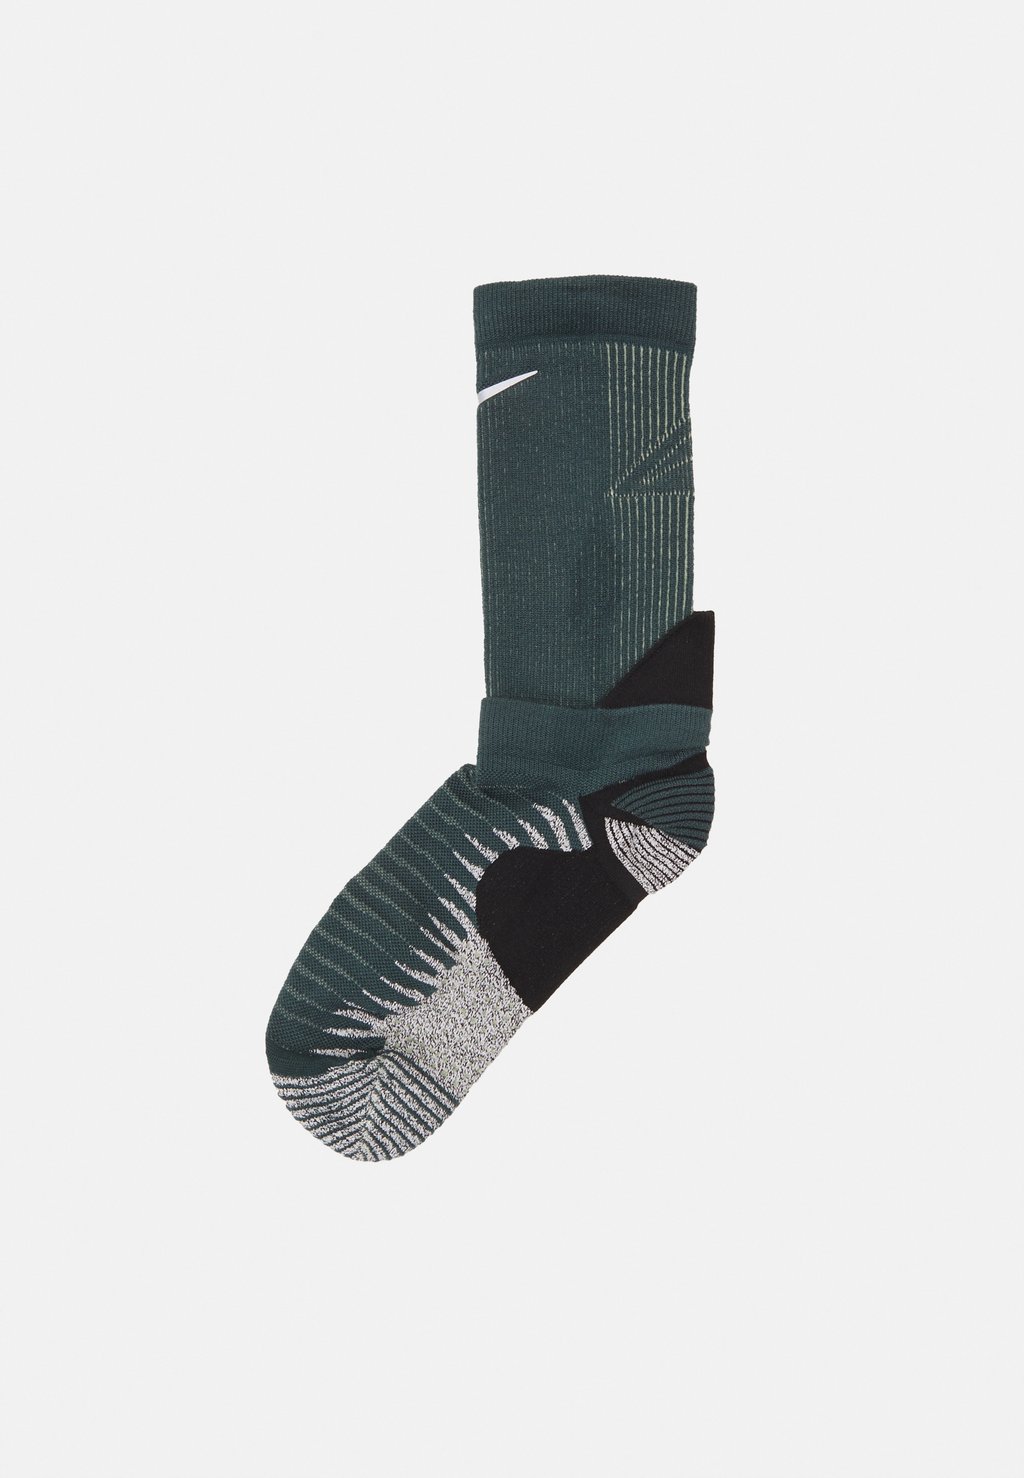 Спортивные носки Trail Running Crew Unisex Nike, цвет deep jungle/black/luminous green/silver цена и фото